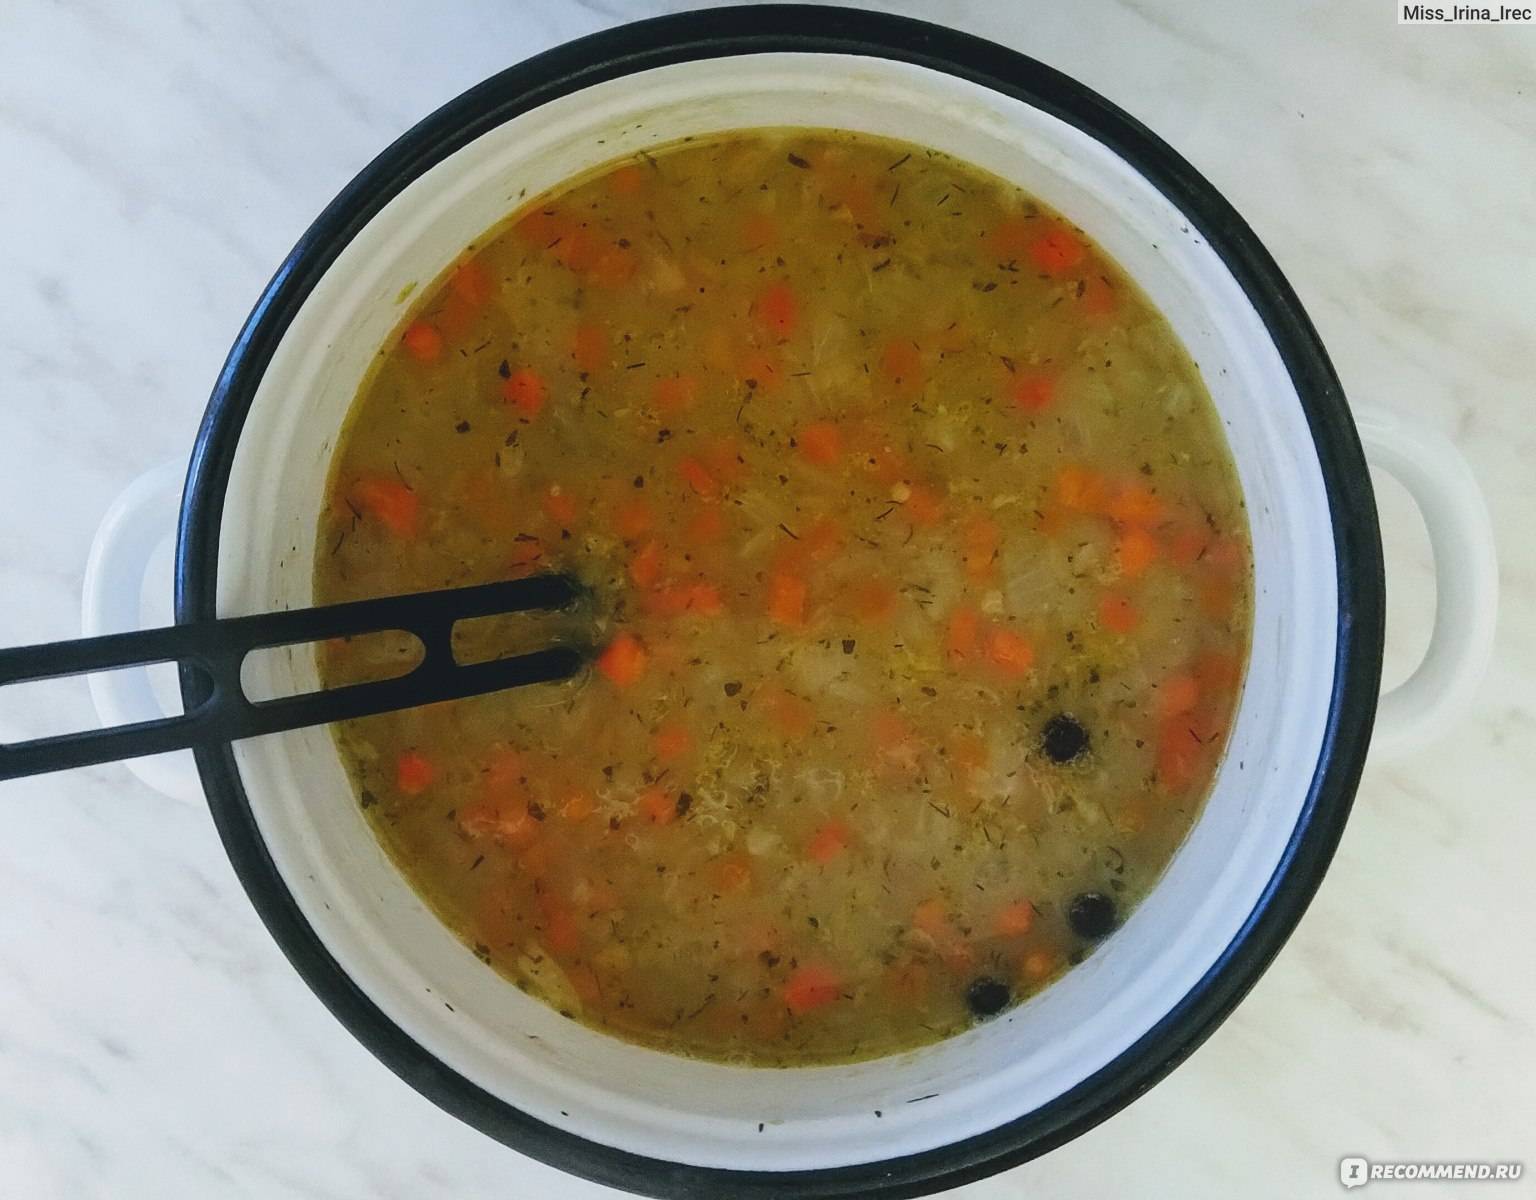 Гороховый суп ребенку 1. Суп гороховый. Гороховый суп в детском саду. Жирный суп. Суп для ребёнка 2 года.